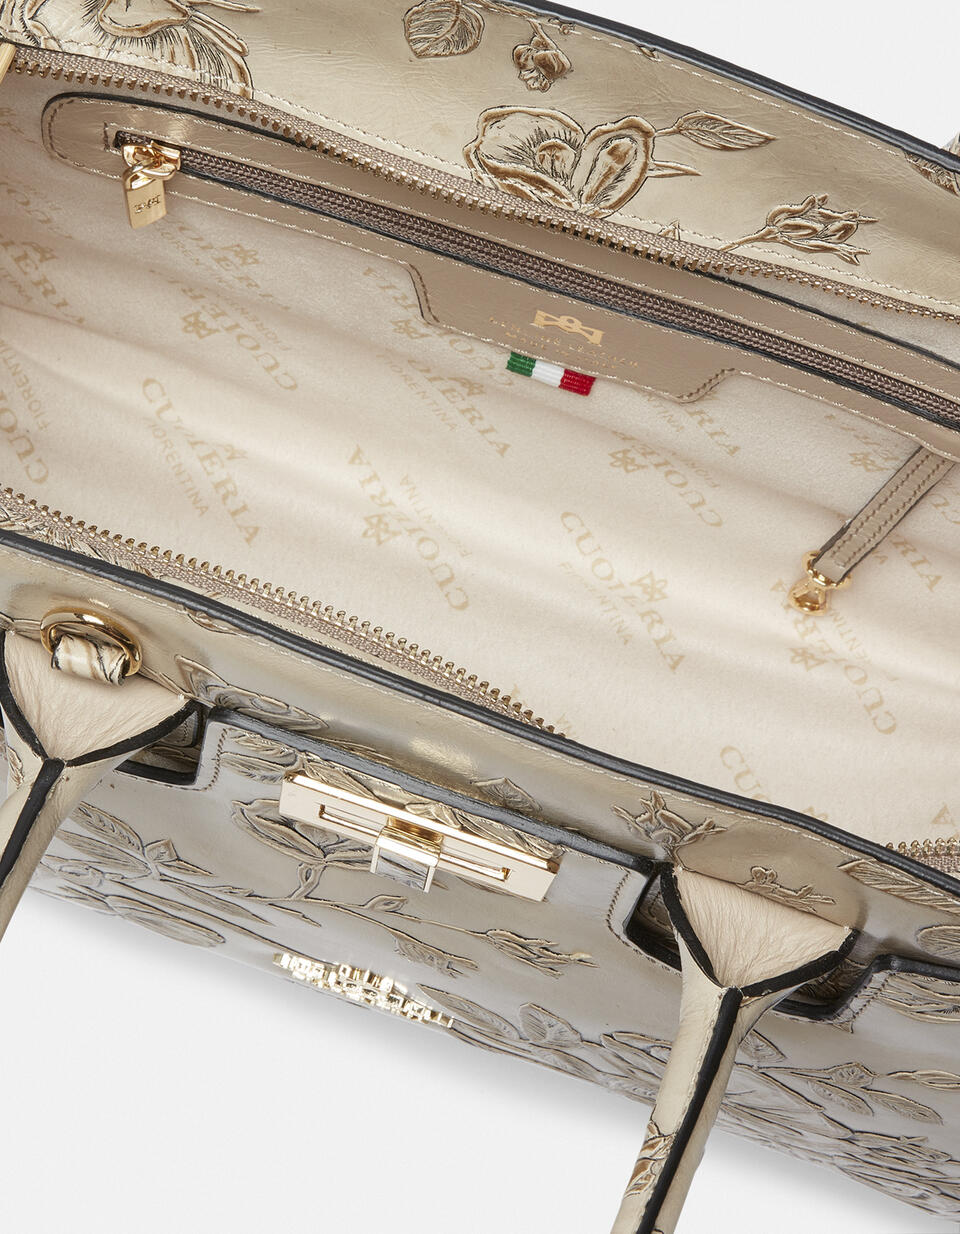 Mimi medium tote bag con dettagli in metallo  - Tote Bag - Borse Donna - Borse - Cuoieria Fiorentina